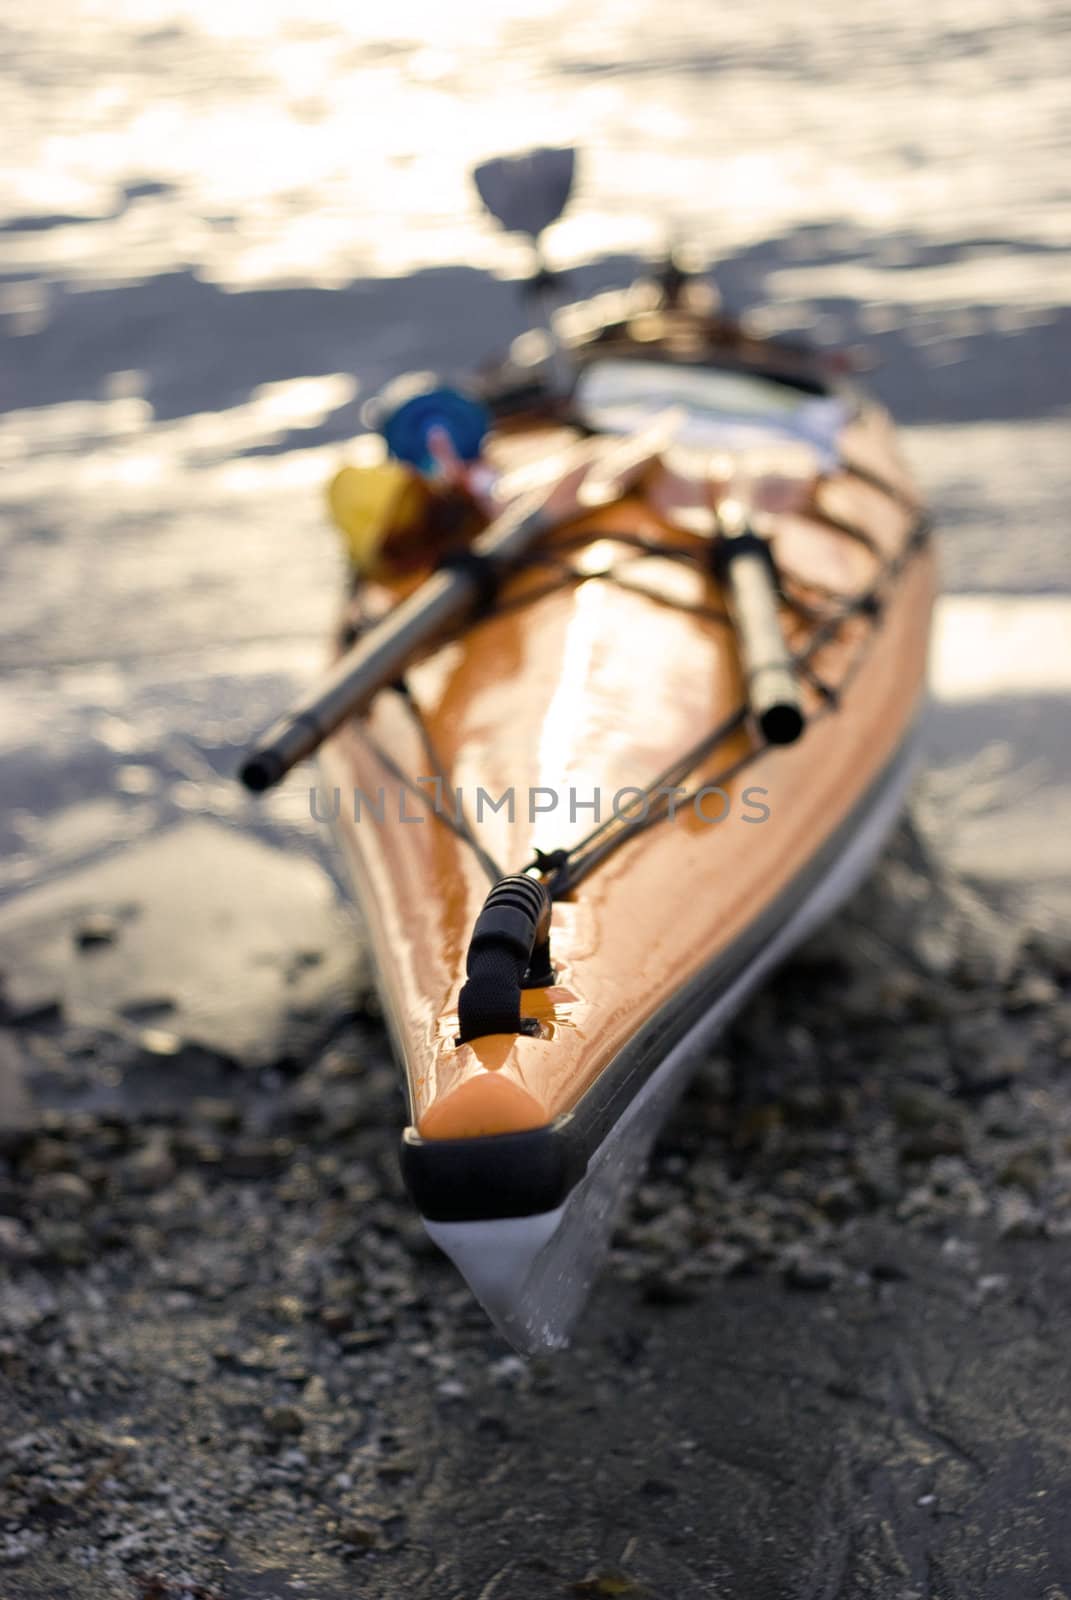 kayak by seattlephoto